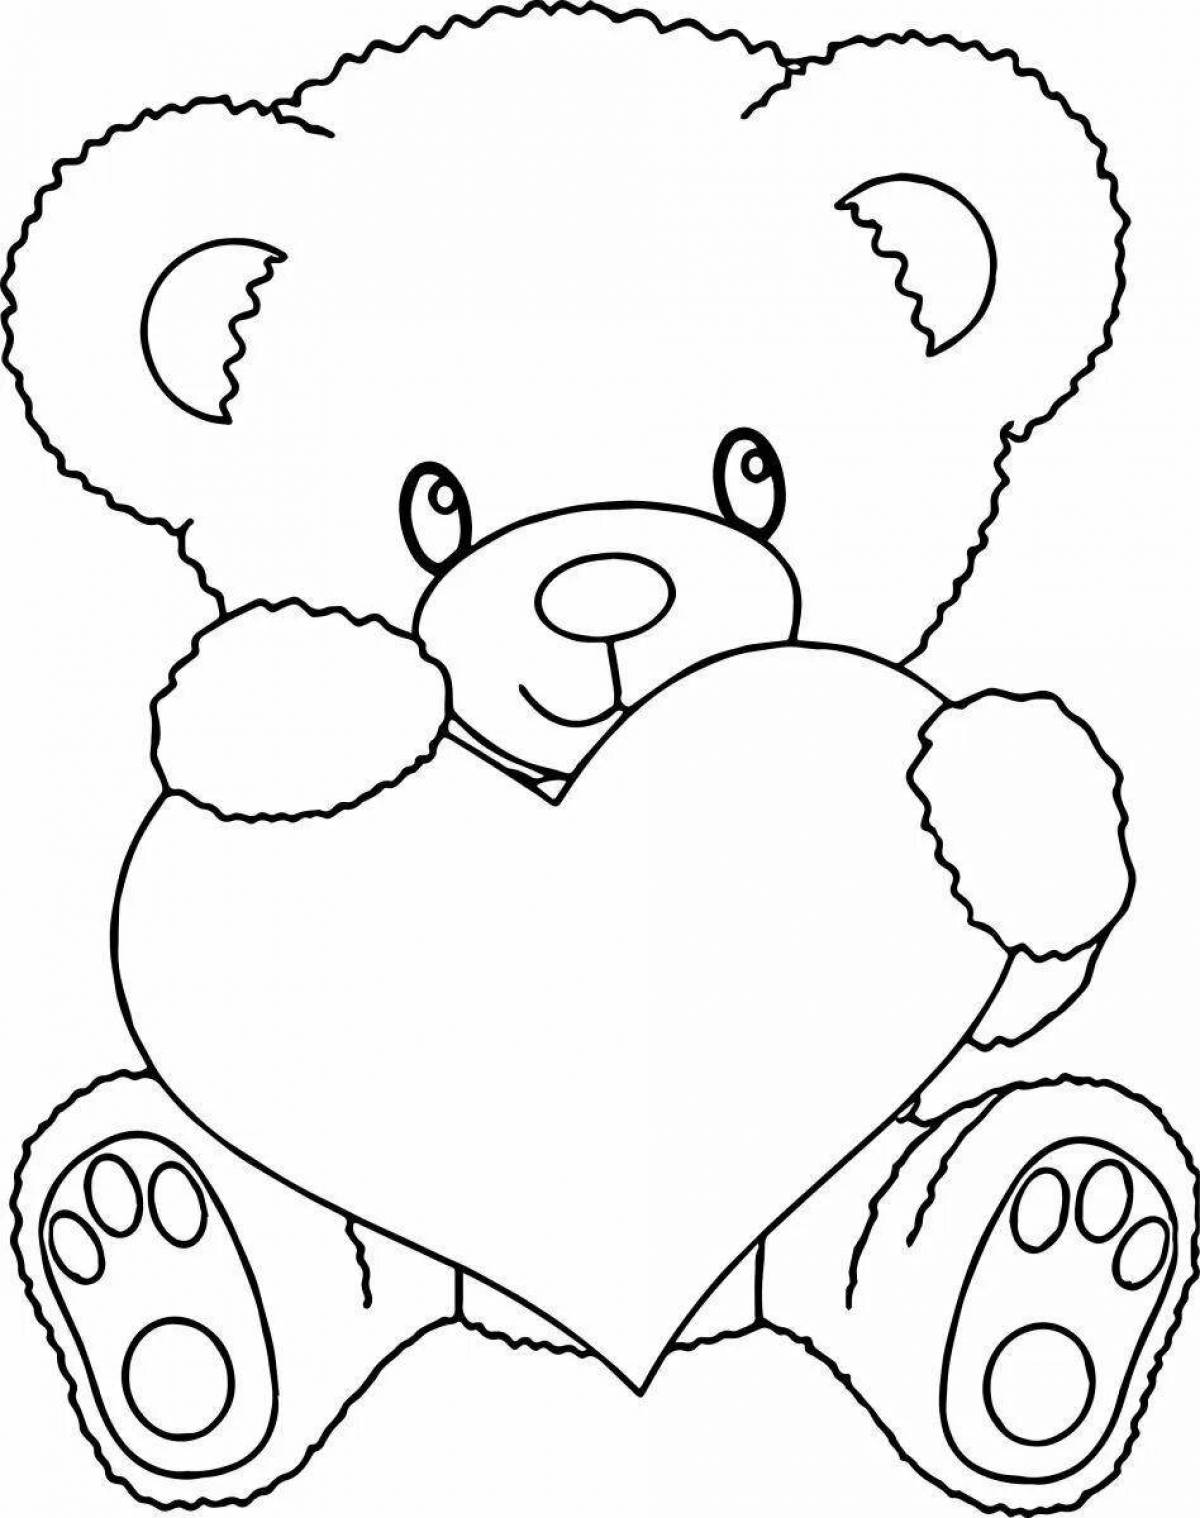 Fancy bear with heart pattern